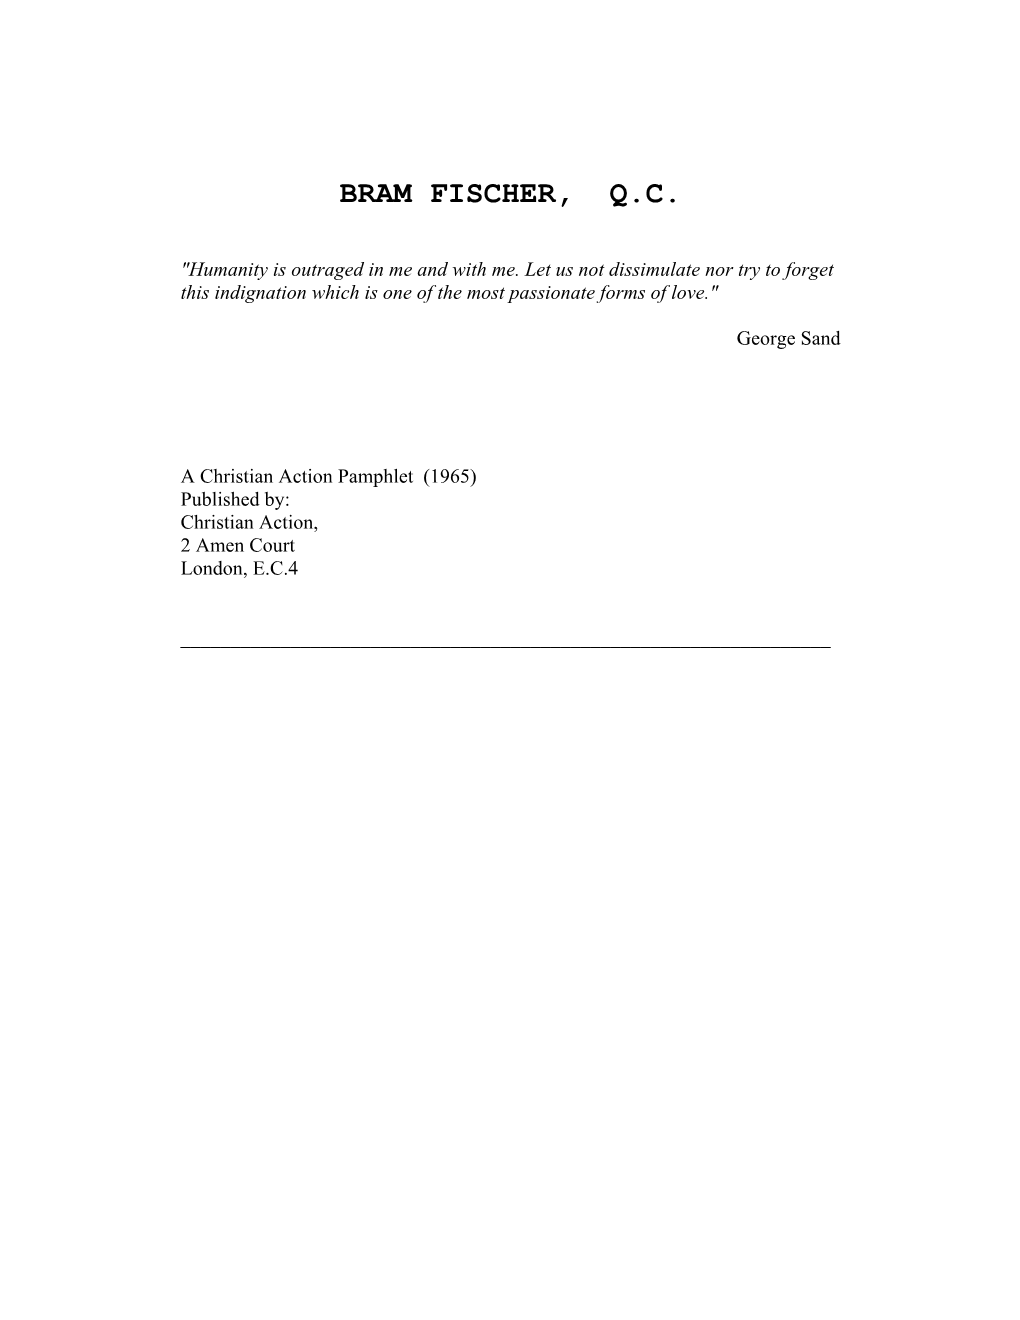 Bram Fischer, Q.C